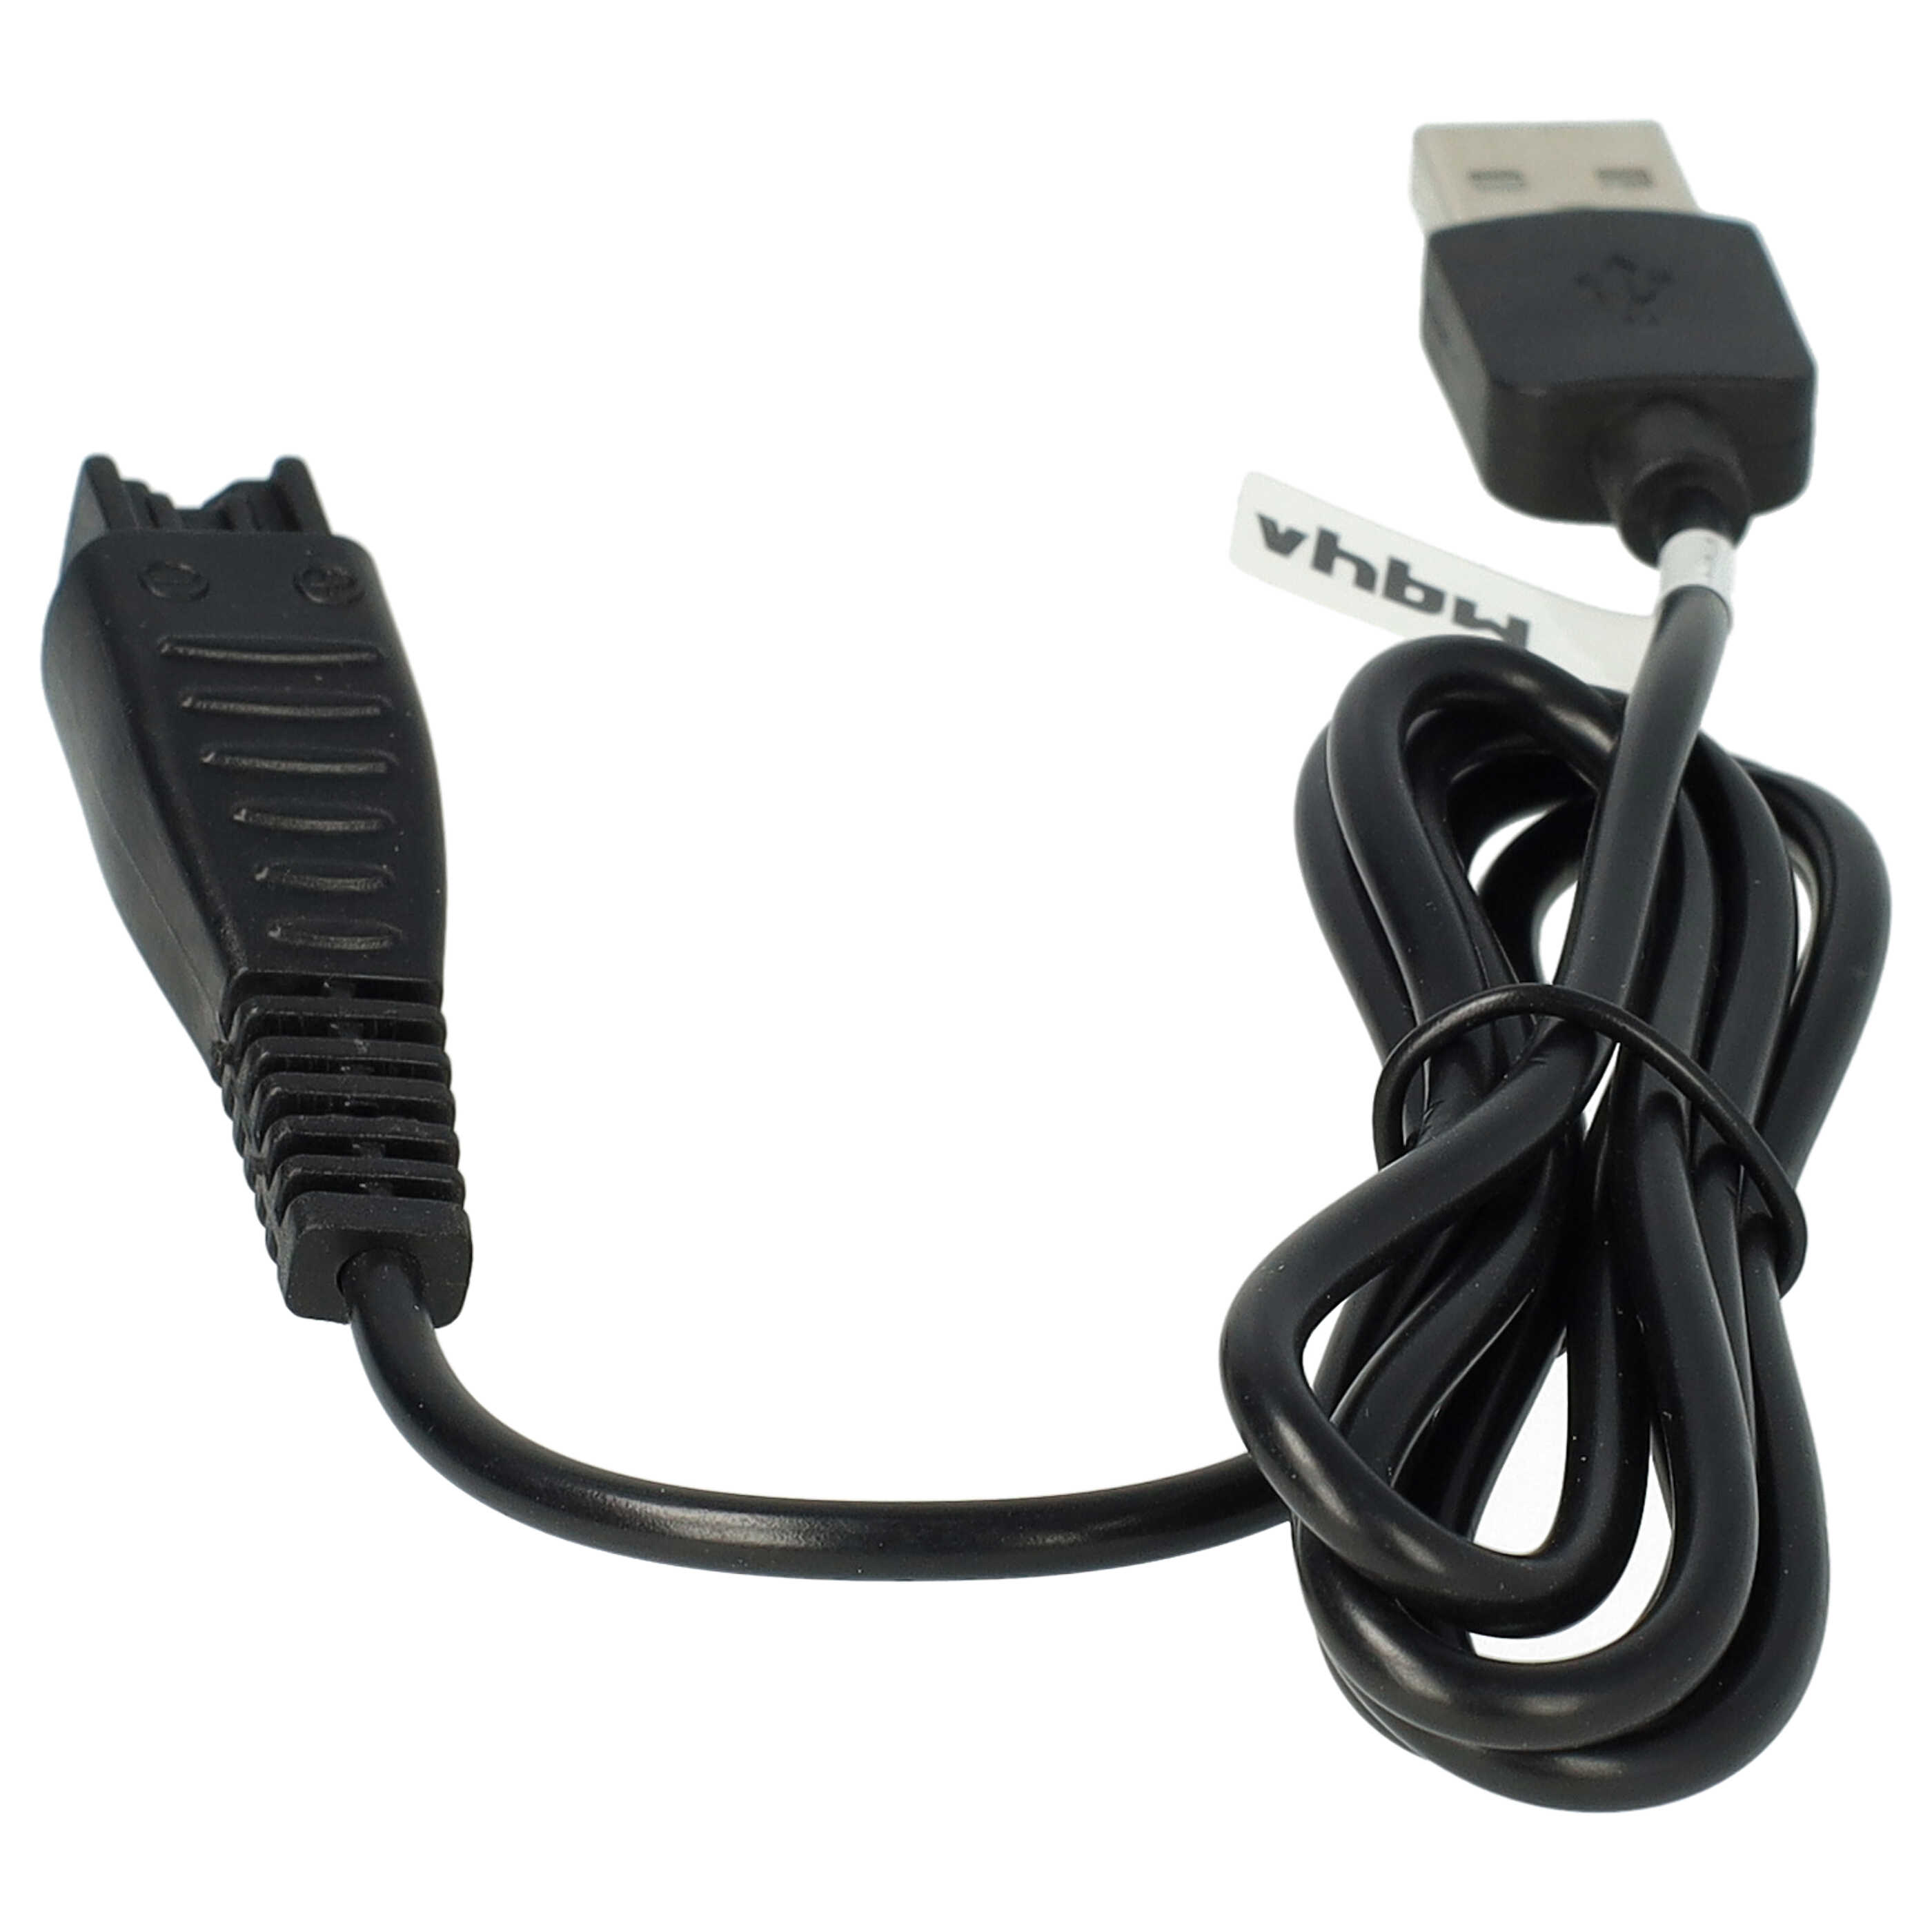 Câble de charge USB remplace Panasonic RE7-59, RE7-68, RE7-51, RE7-40 pour rasoir Panasonic – 120 cm